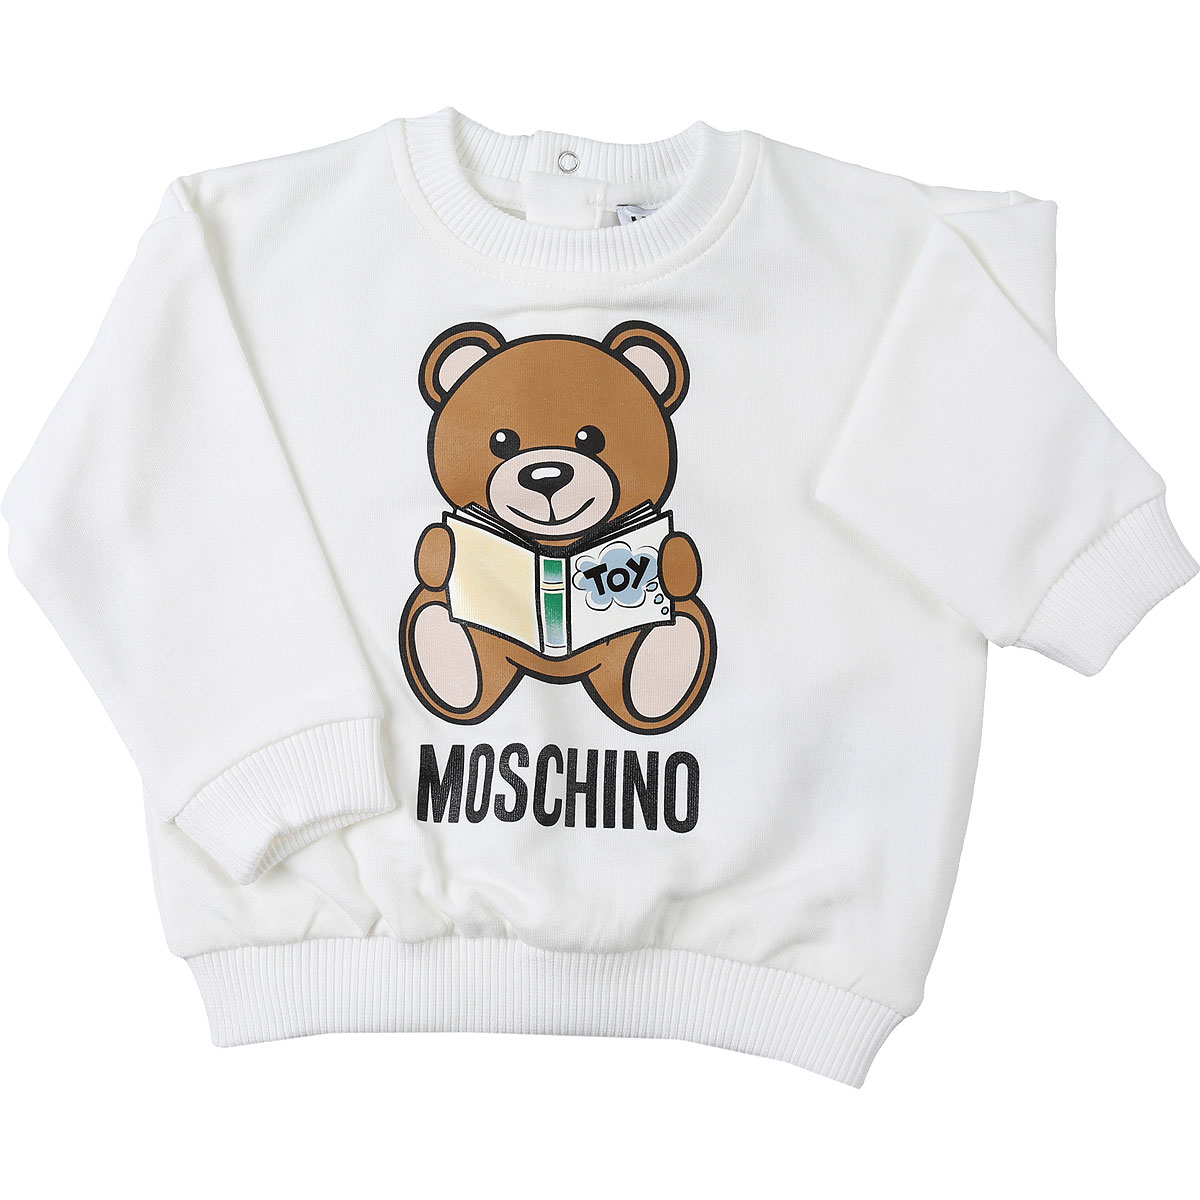 Moschino Baby Sweatshirt & Kapuzenpullover für Mädchen Günstig im Sale, Weiss, Baumwolle, 2017, 12M 18M 24M 2Y 2Y 3Y 3Y 6M 9M